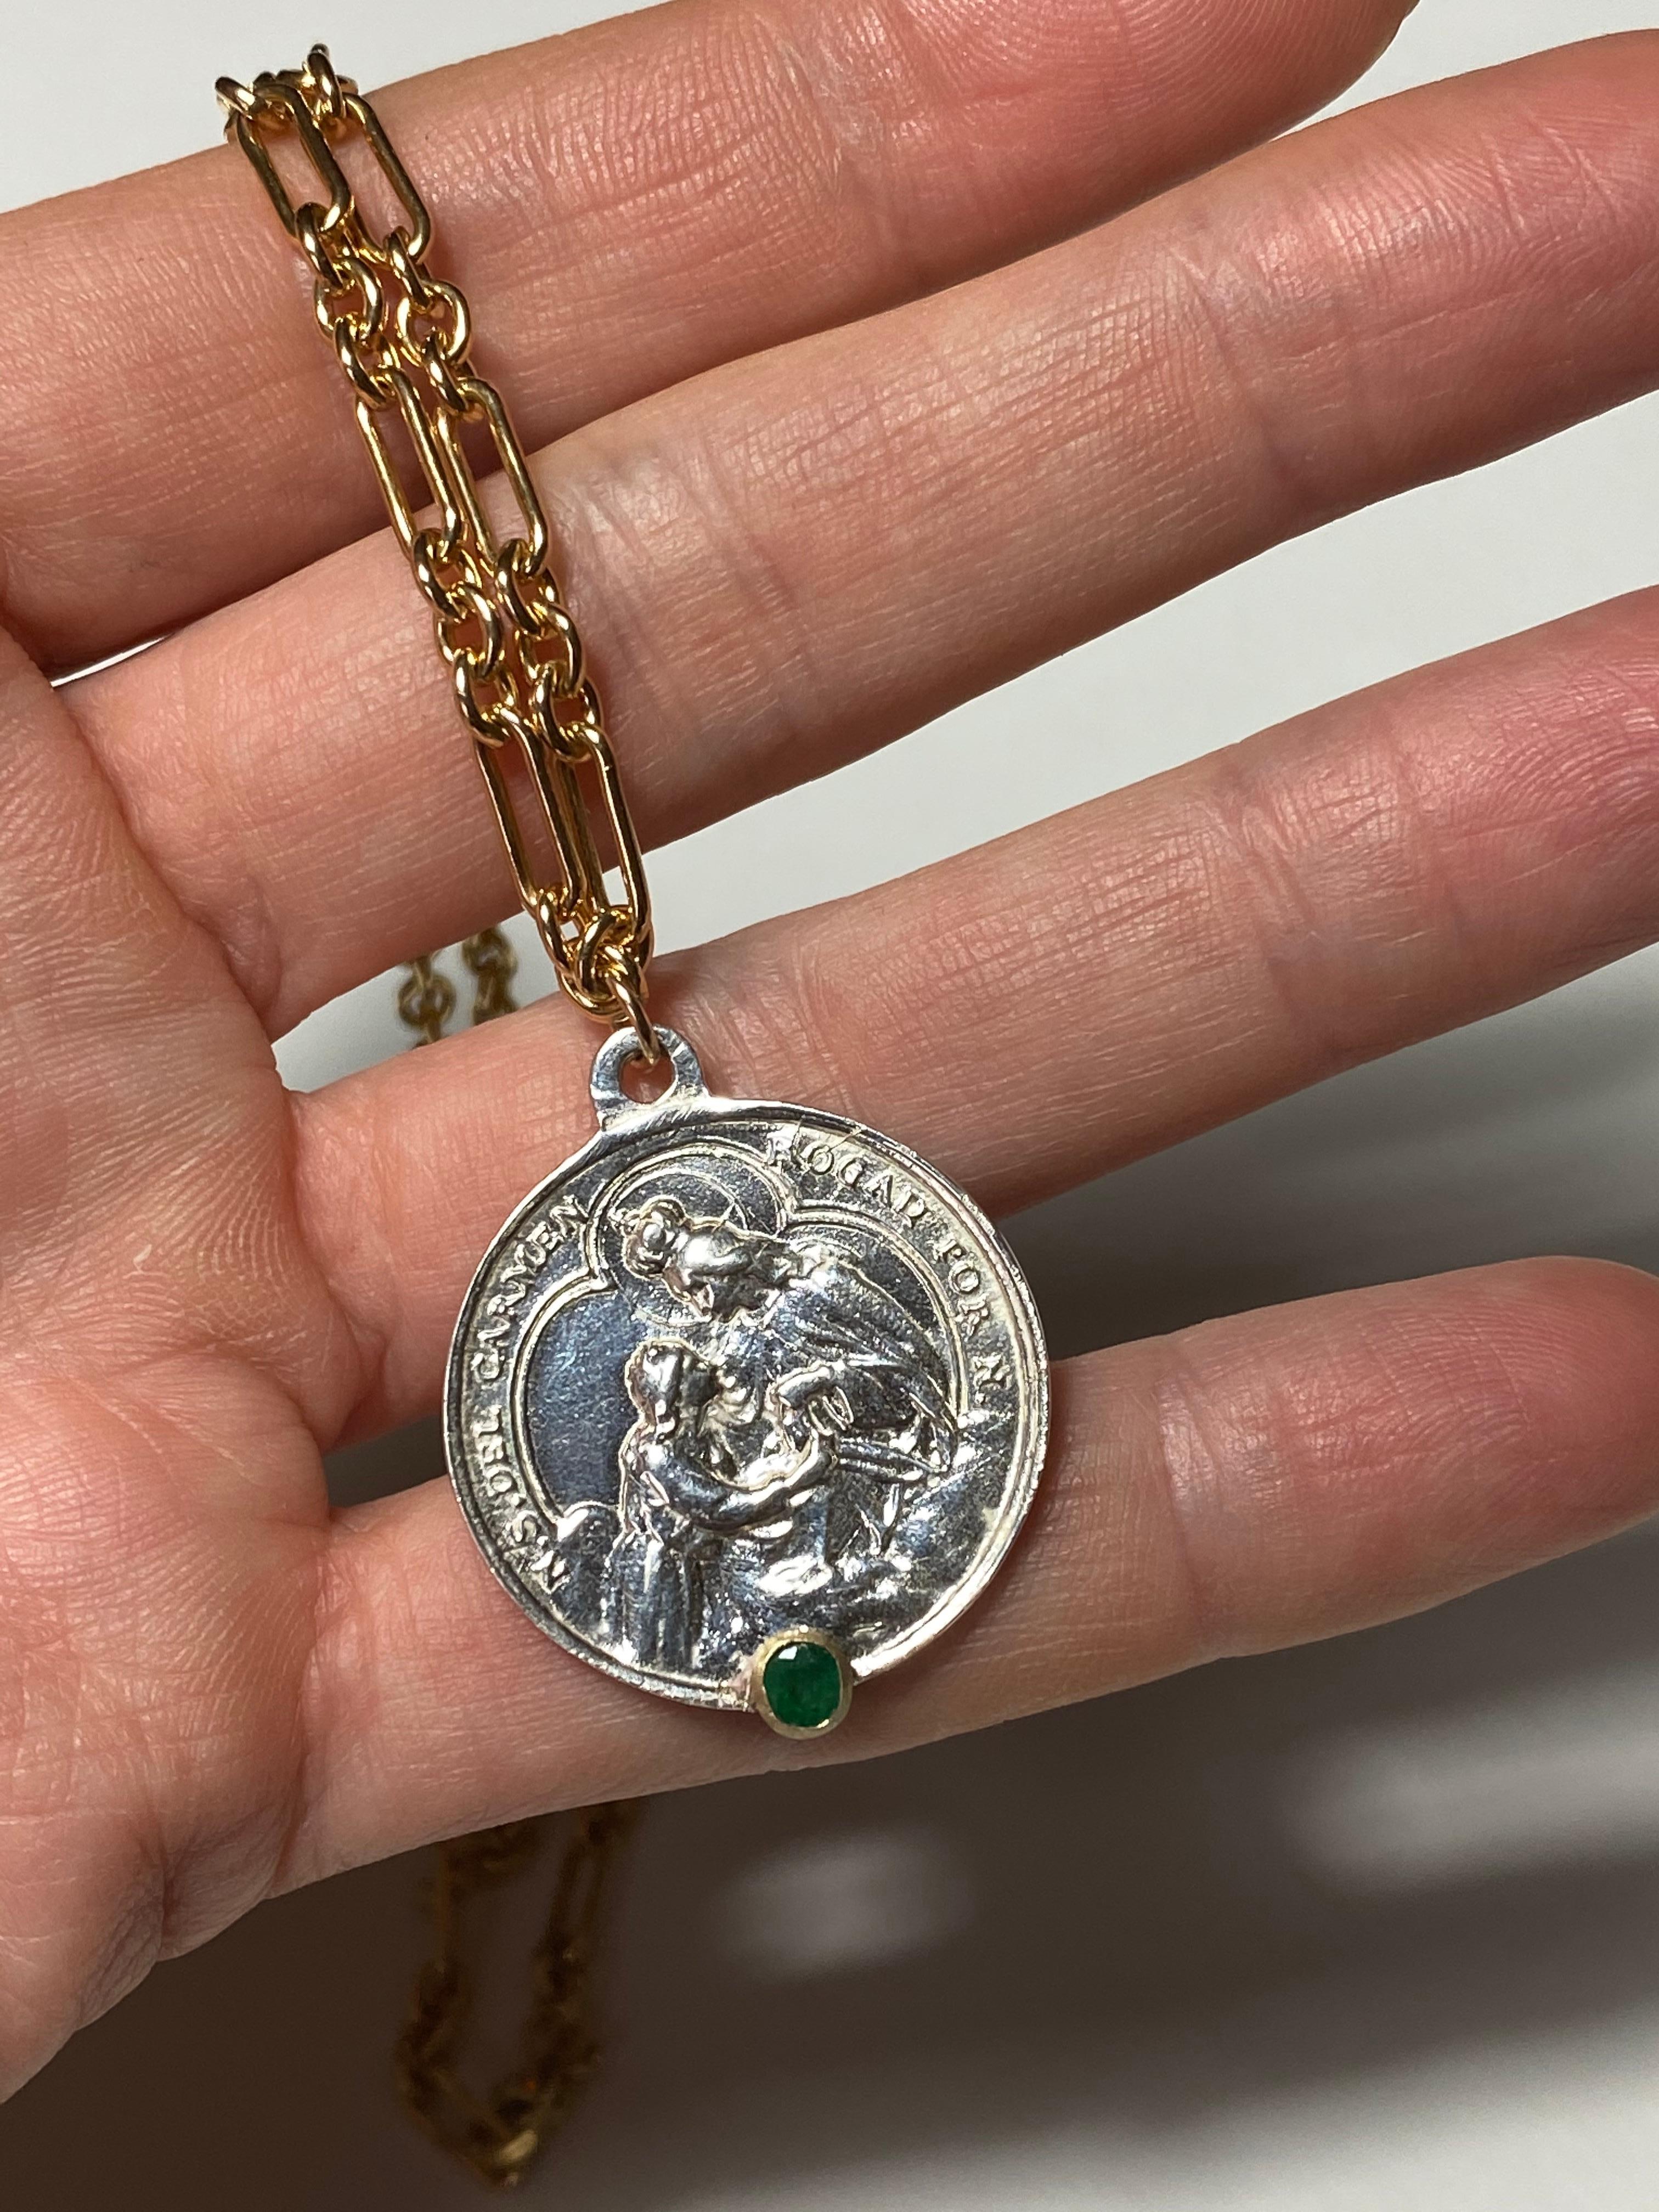 Emerald Virgin Mary Halskette Medaille Chunky Kette Anhänger J Dauphin

Exklusives Stück mit einer runden Medaille der Jungfrau Maria in Silber mit einem Smaragd in einer Goldzacke und mit einer goldfarbenen Kette. Halskette ist 16